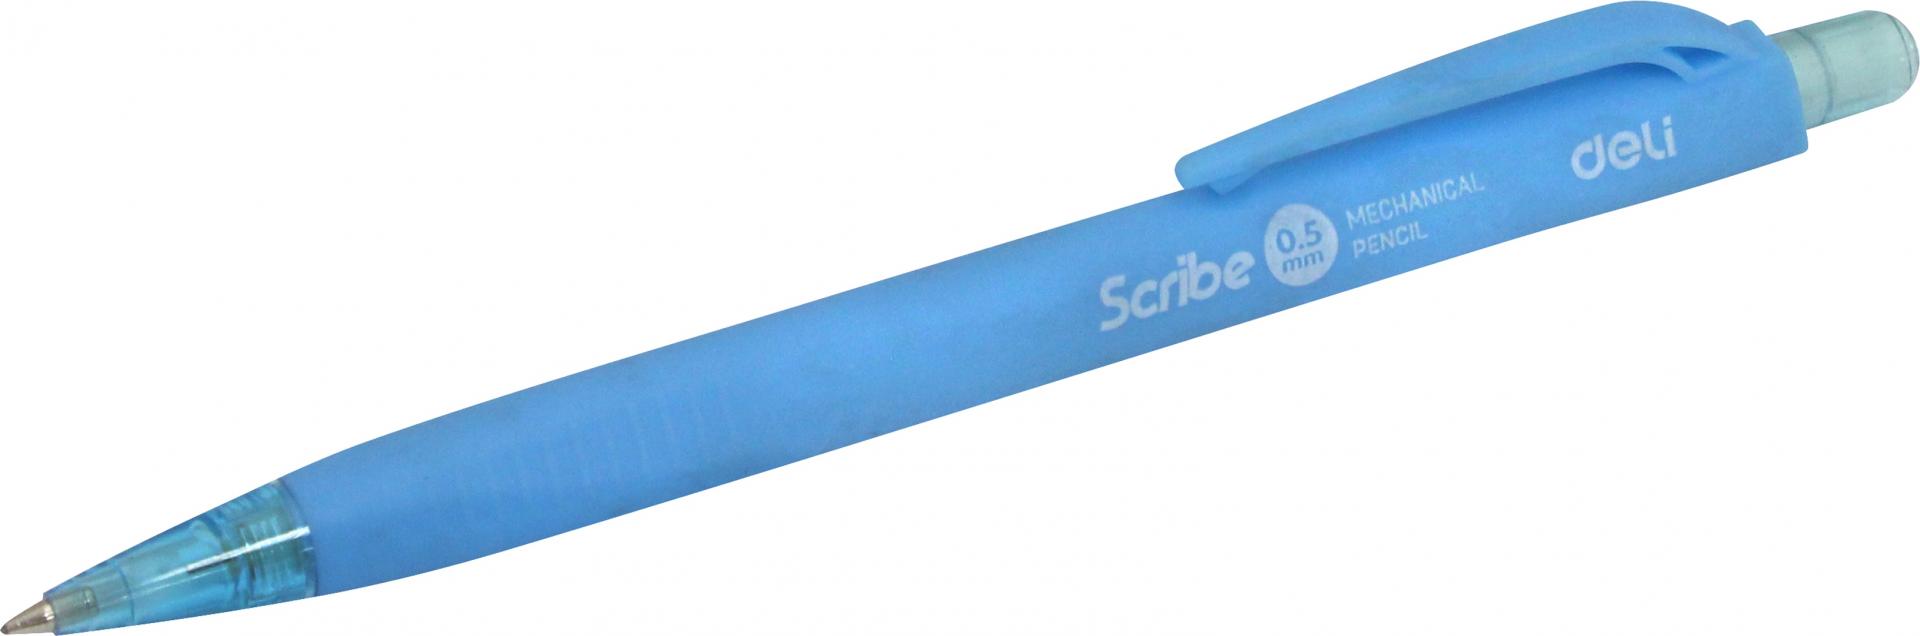 Иллюстрация 1 из 3 для Карандаш механический, 0.5 мм "Scribe" (EU60200) | Лабиринт - канцтовы. Источник: Лабиринт